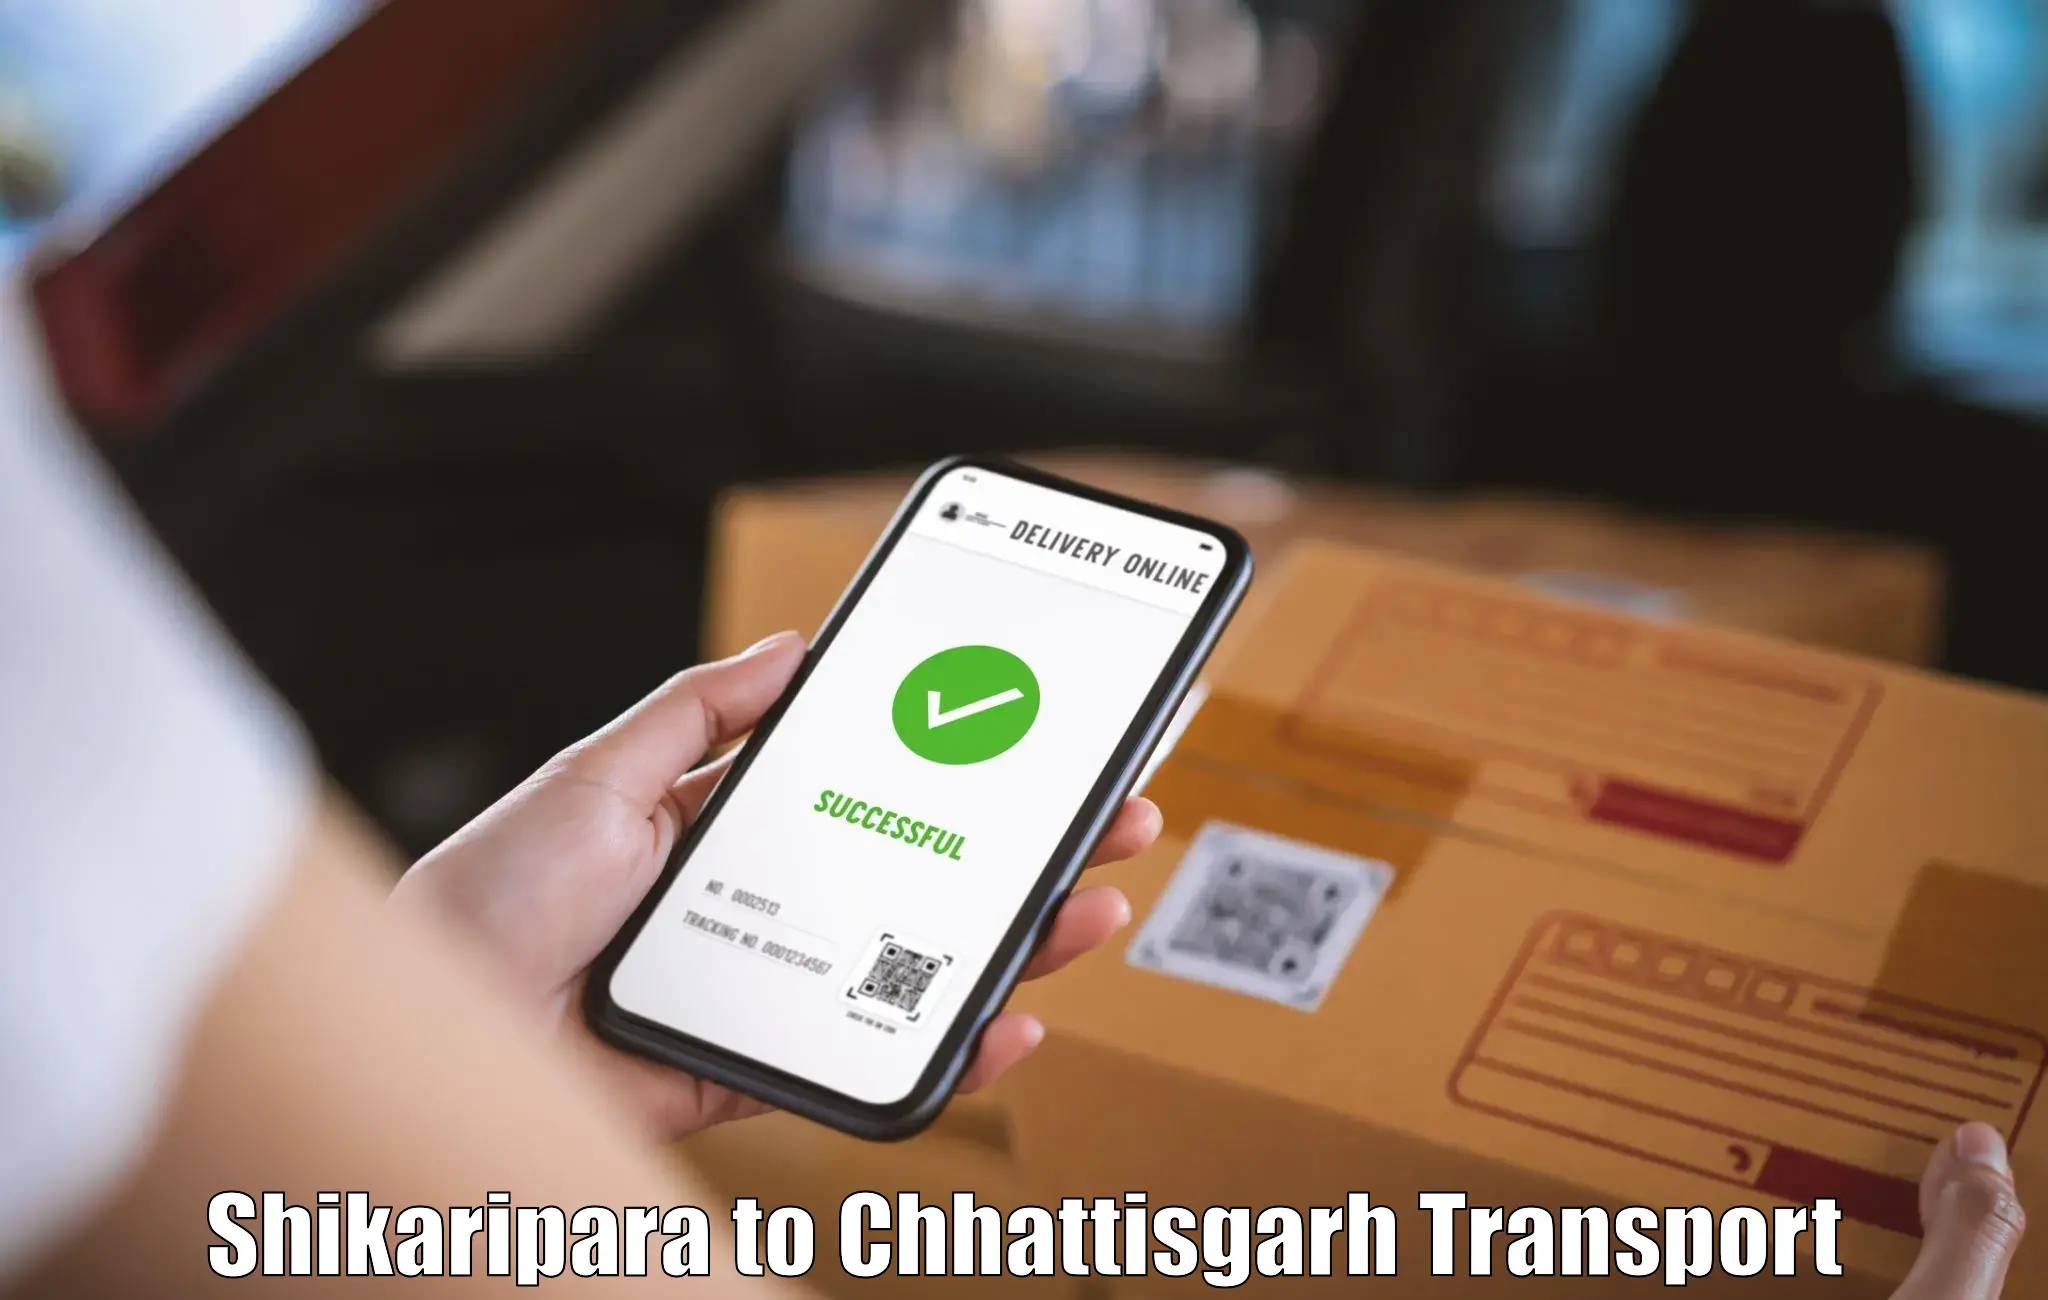 Pick up transport service Shikaripara to Kanker